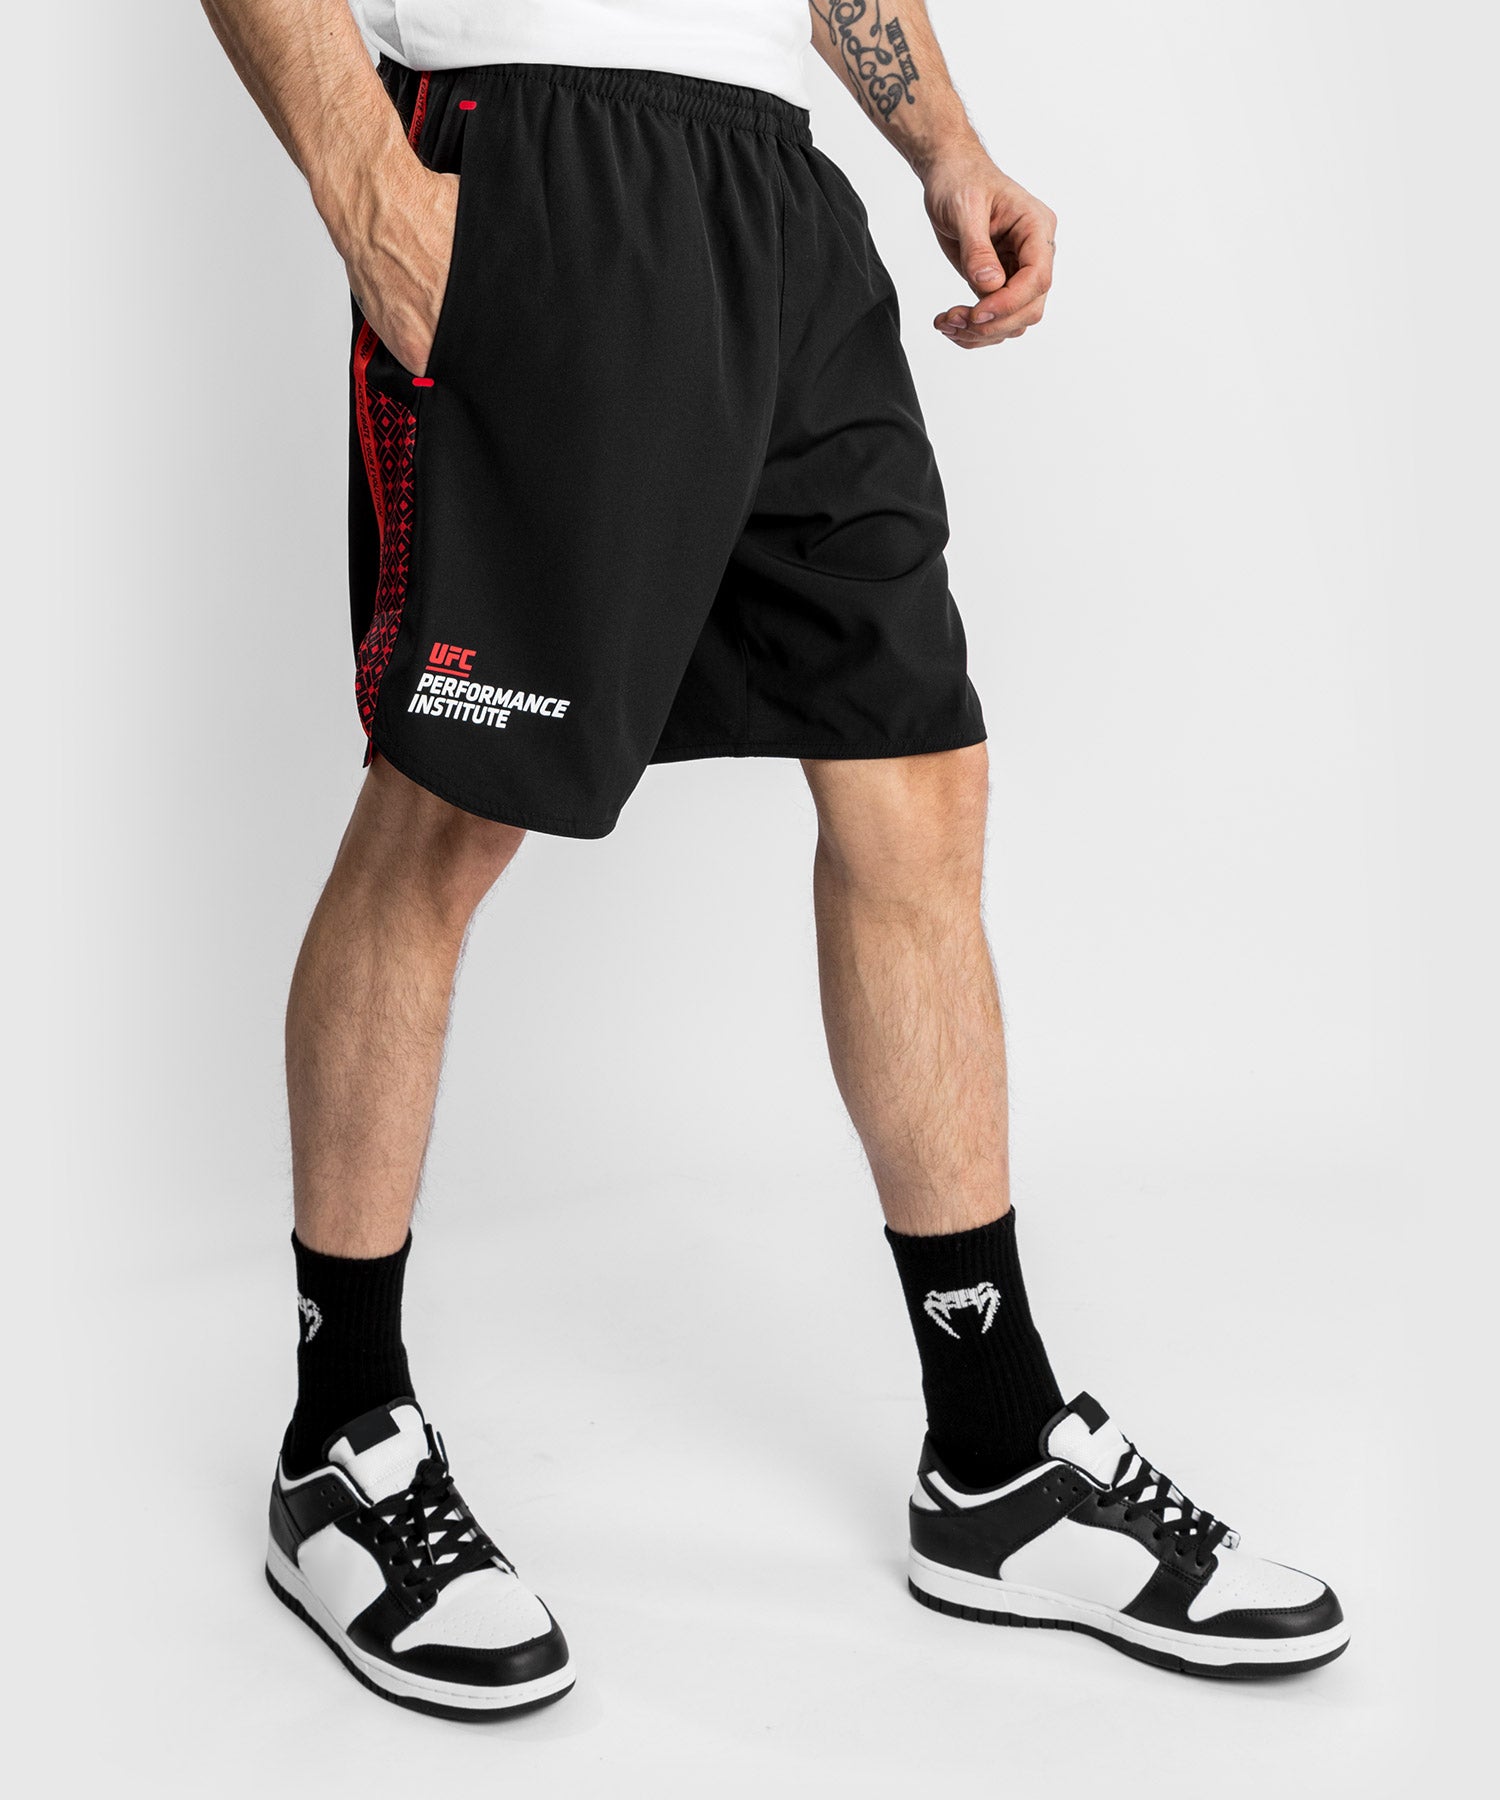 UFC Venum Performance Institute 2.0 Pantalones cortos de alto rendimie –  Venum España